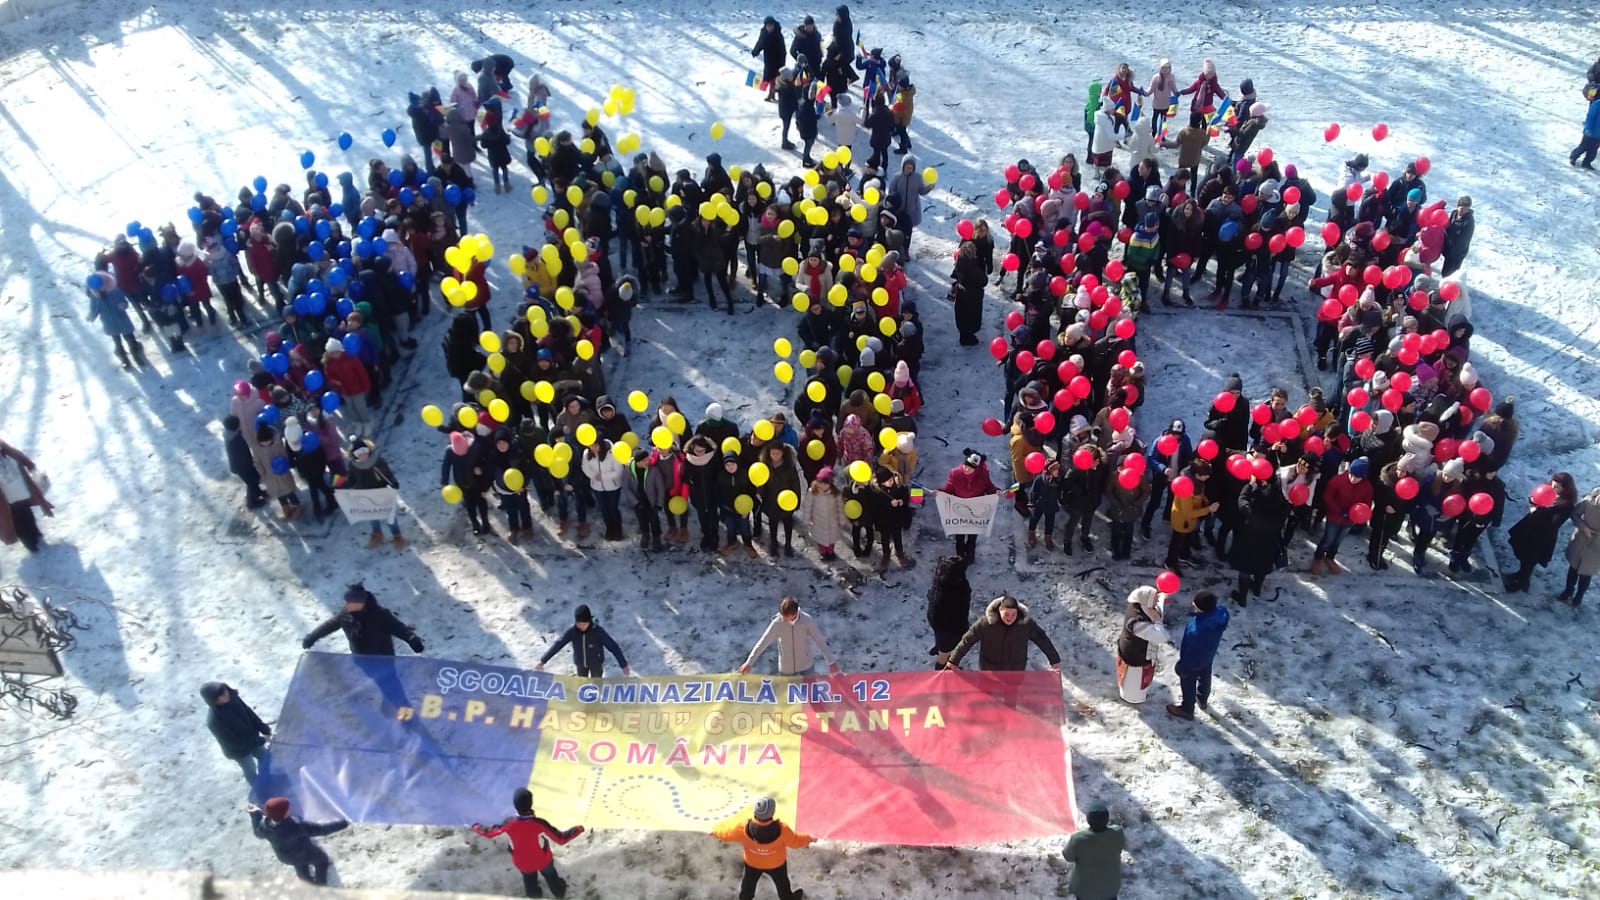 Elevii Școlii Gimnaziale nr. 12 "B.P. Hașdeu" din Constanța au organizat un flashmob la ceas centenar